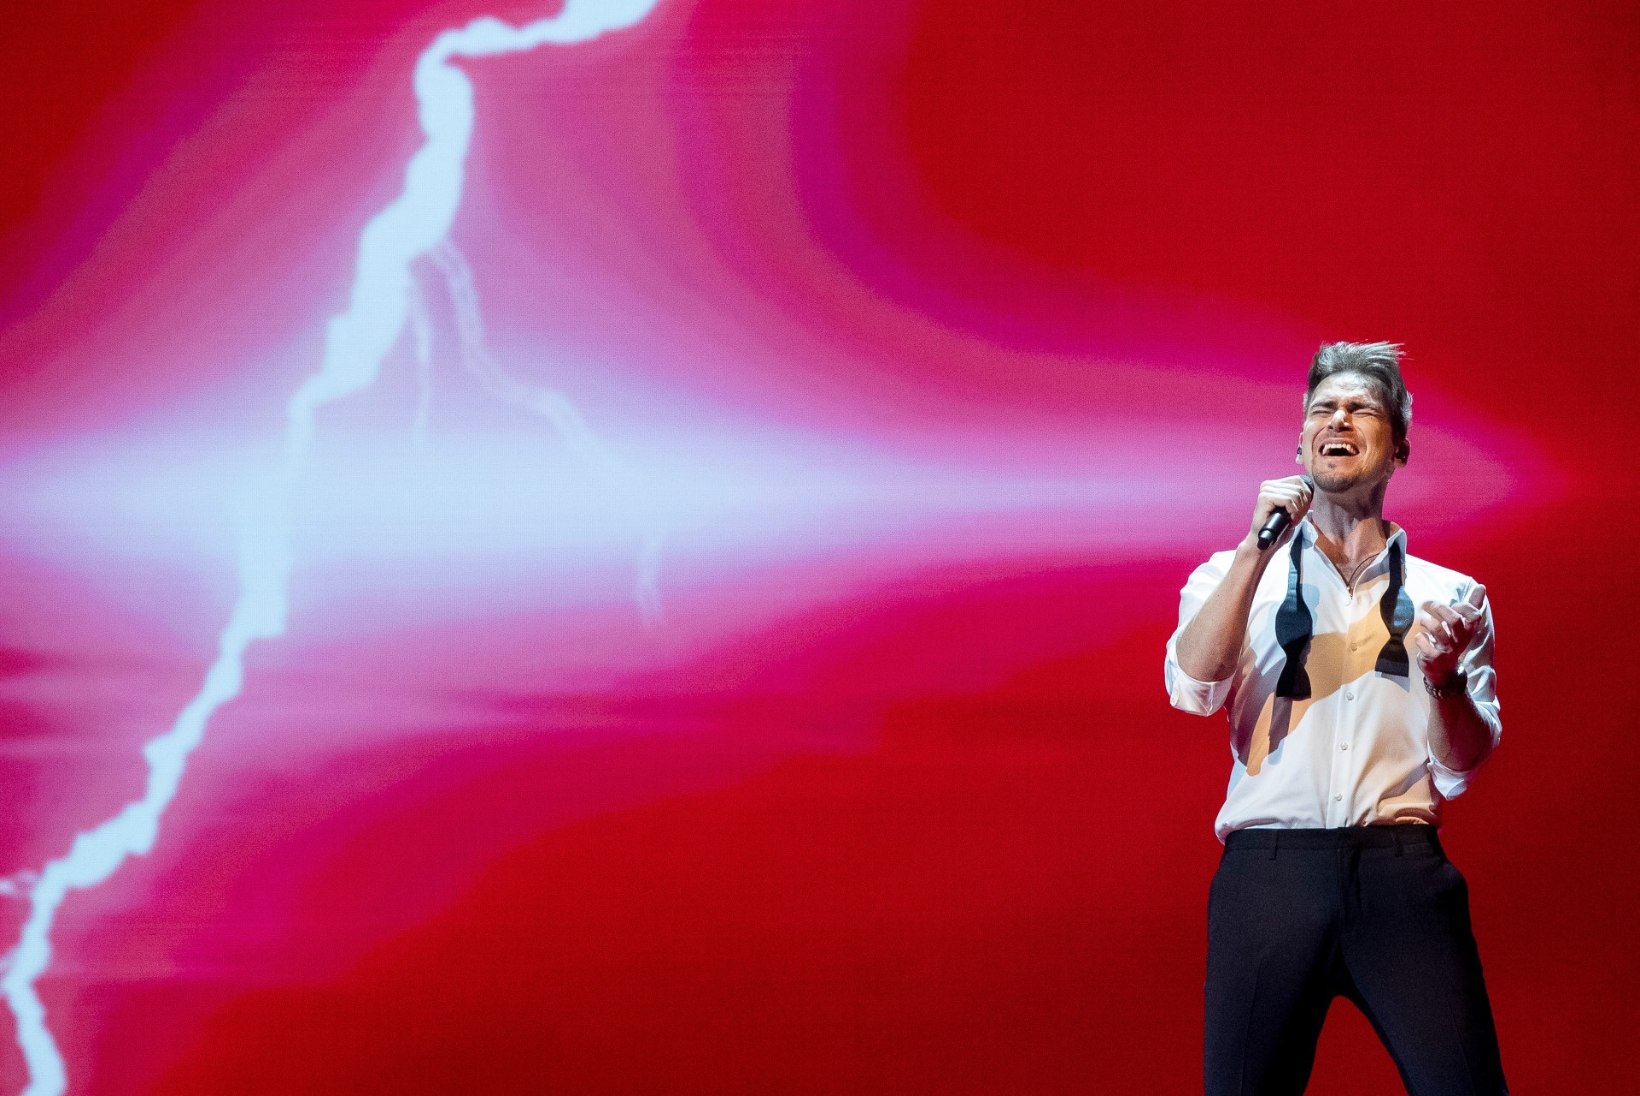 VIDEO | Uku Suviste esimesest lavaproovist Eurovisionil: kümne palli skaalal hakkame neljast minema ja poolfinaaliks tahaks etteotsa jõuda